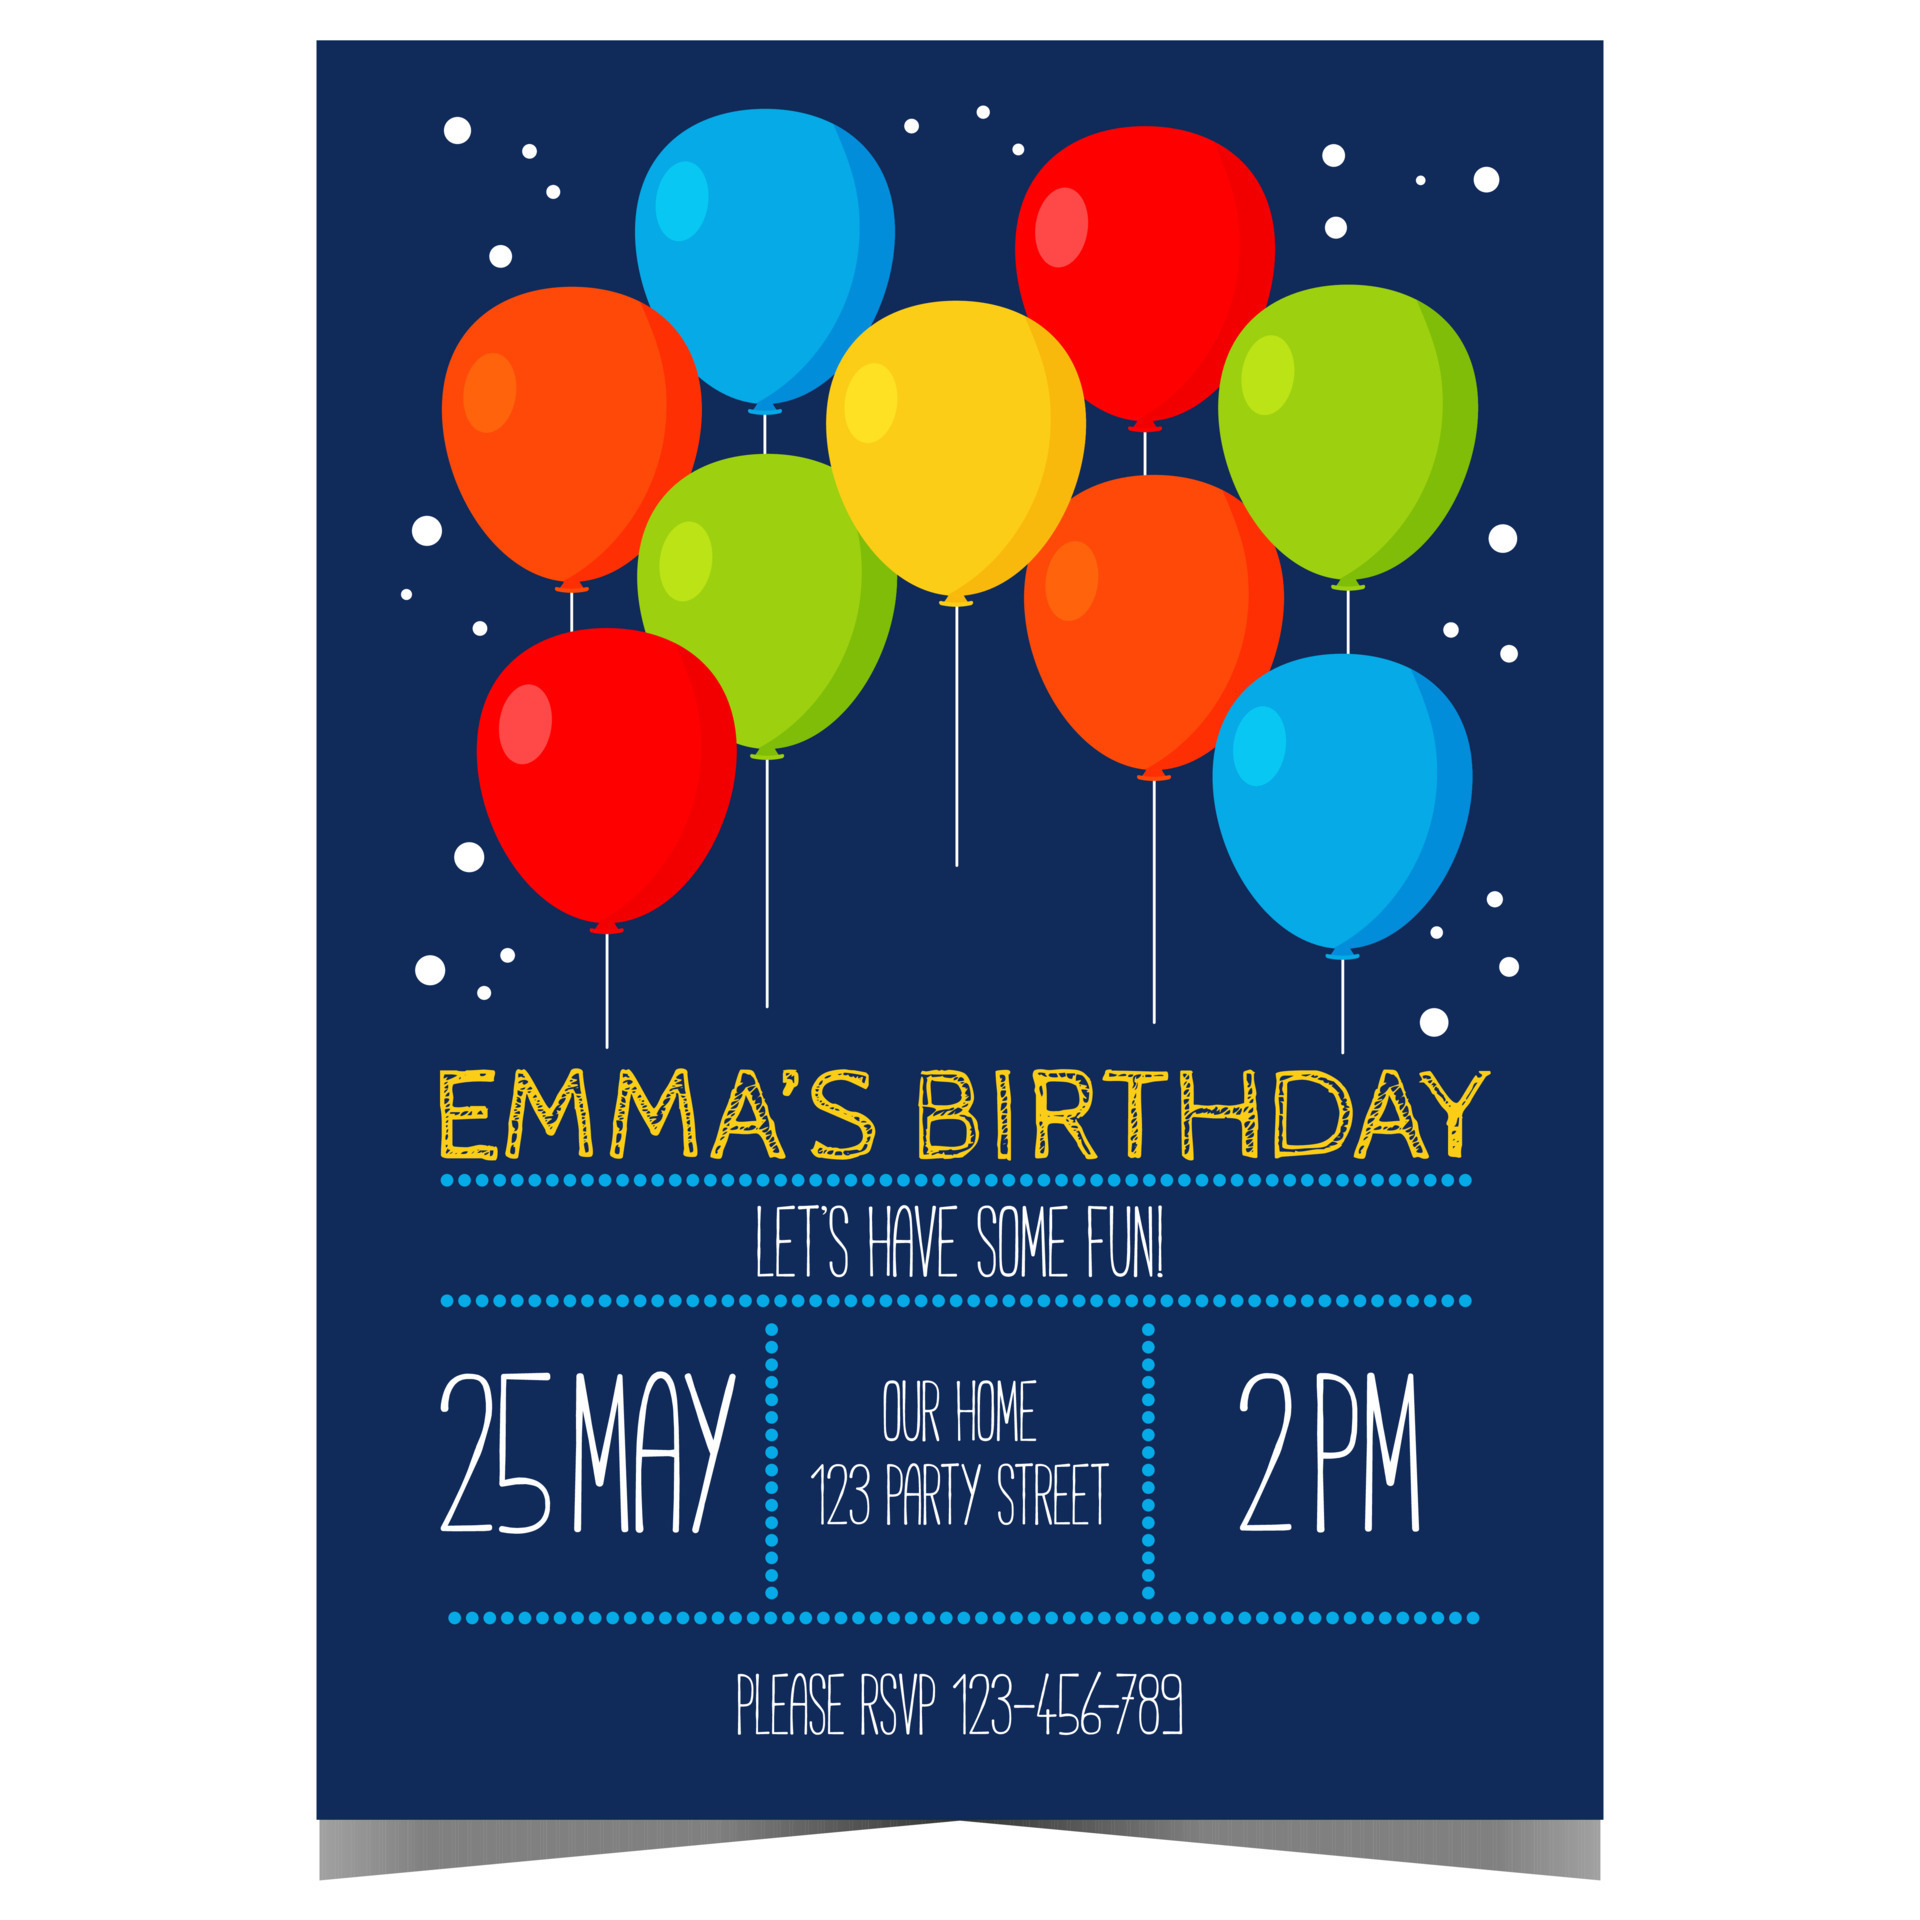 Carte d'invitation pour un anniversaire d'enfants à imprimer gratuit